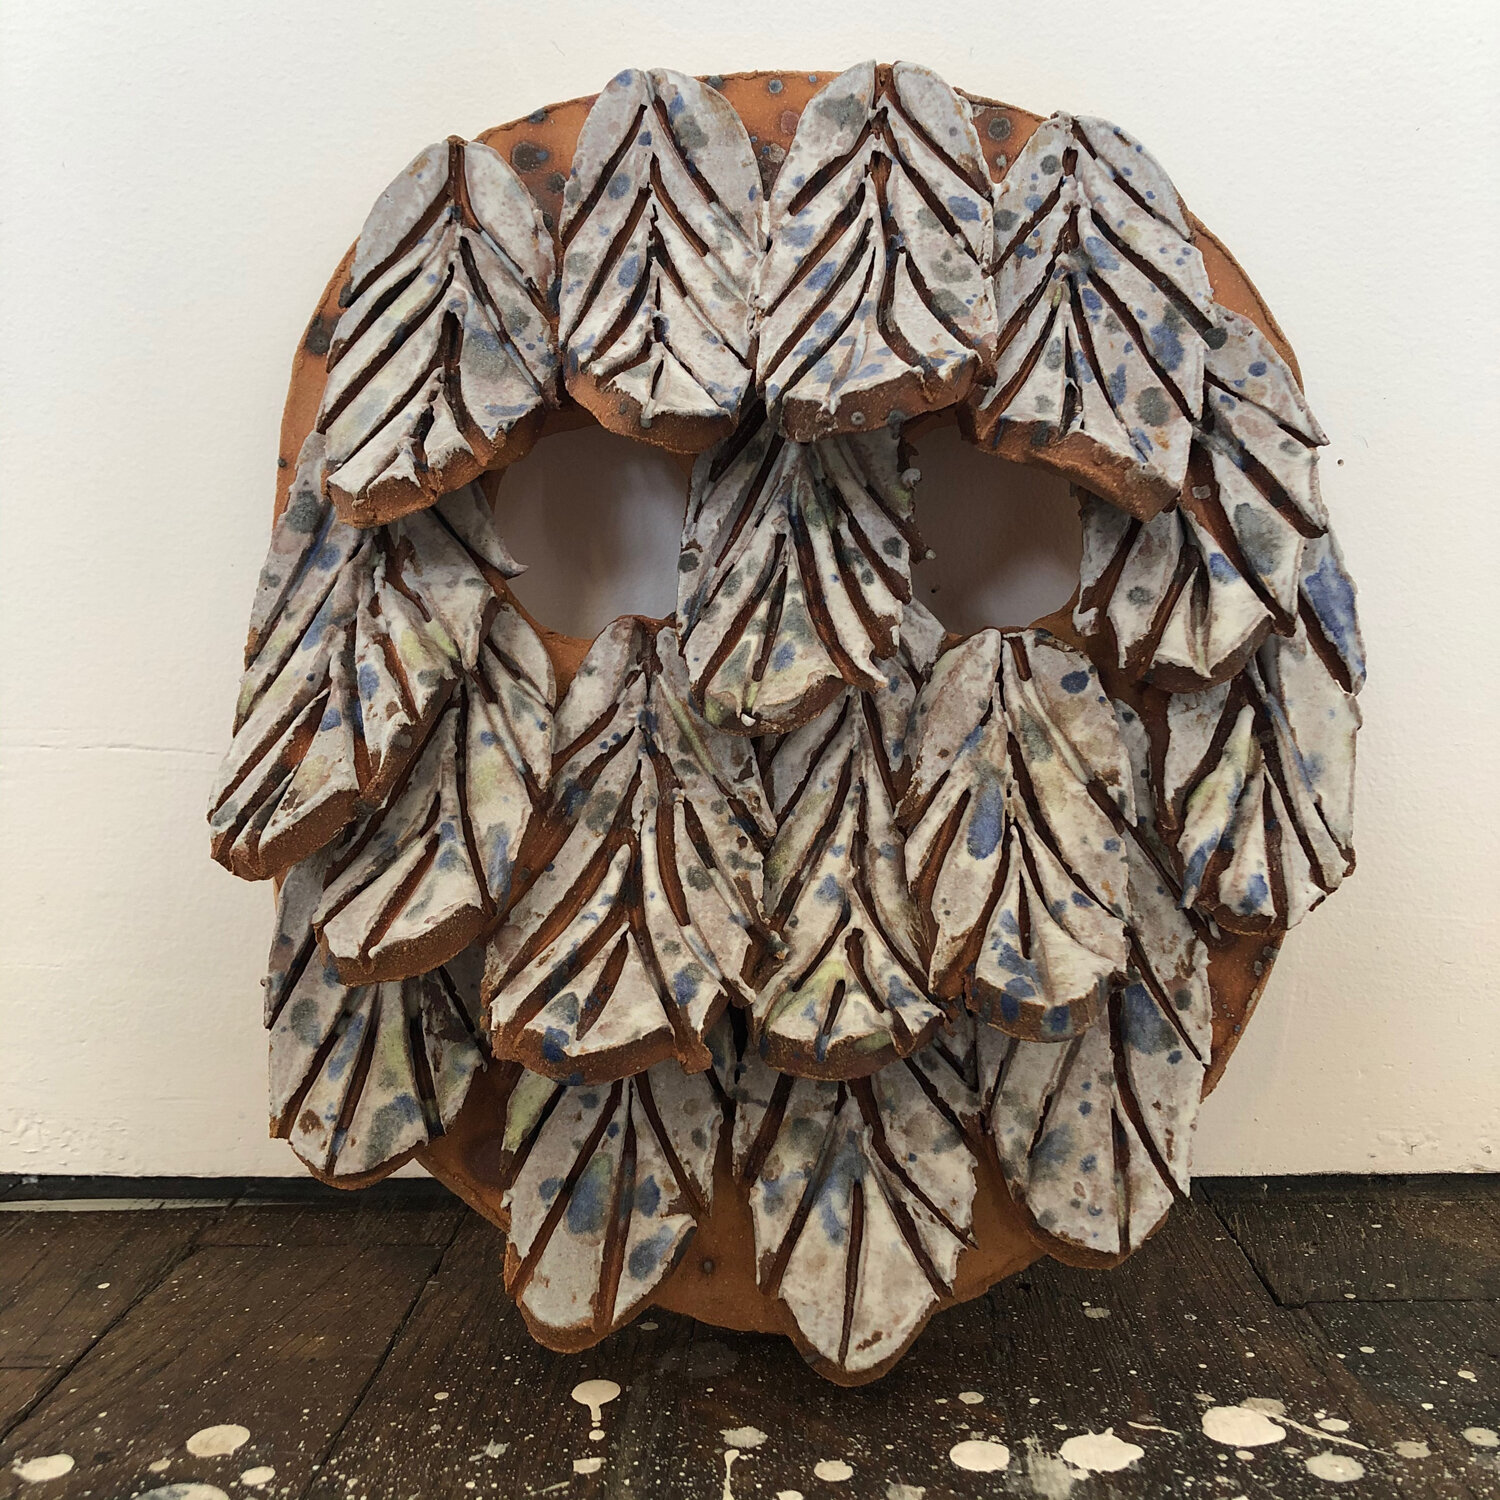 Mask with Feathers, 2020, glazed ceramic, 10 3/4 x 8 1/2 x 2 1/2"